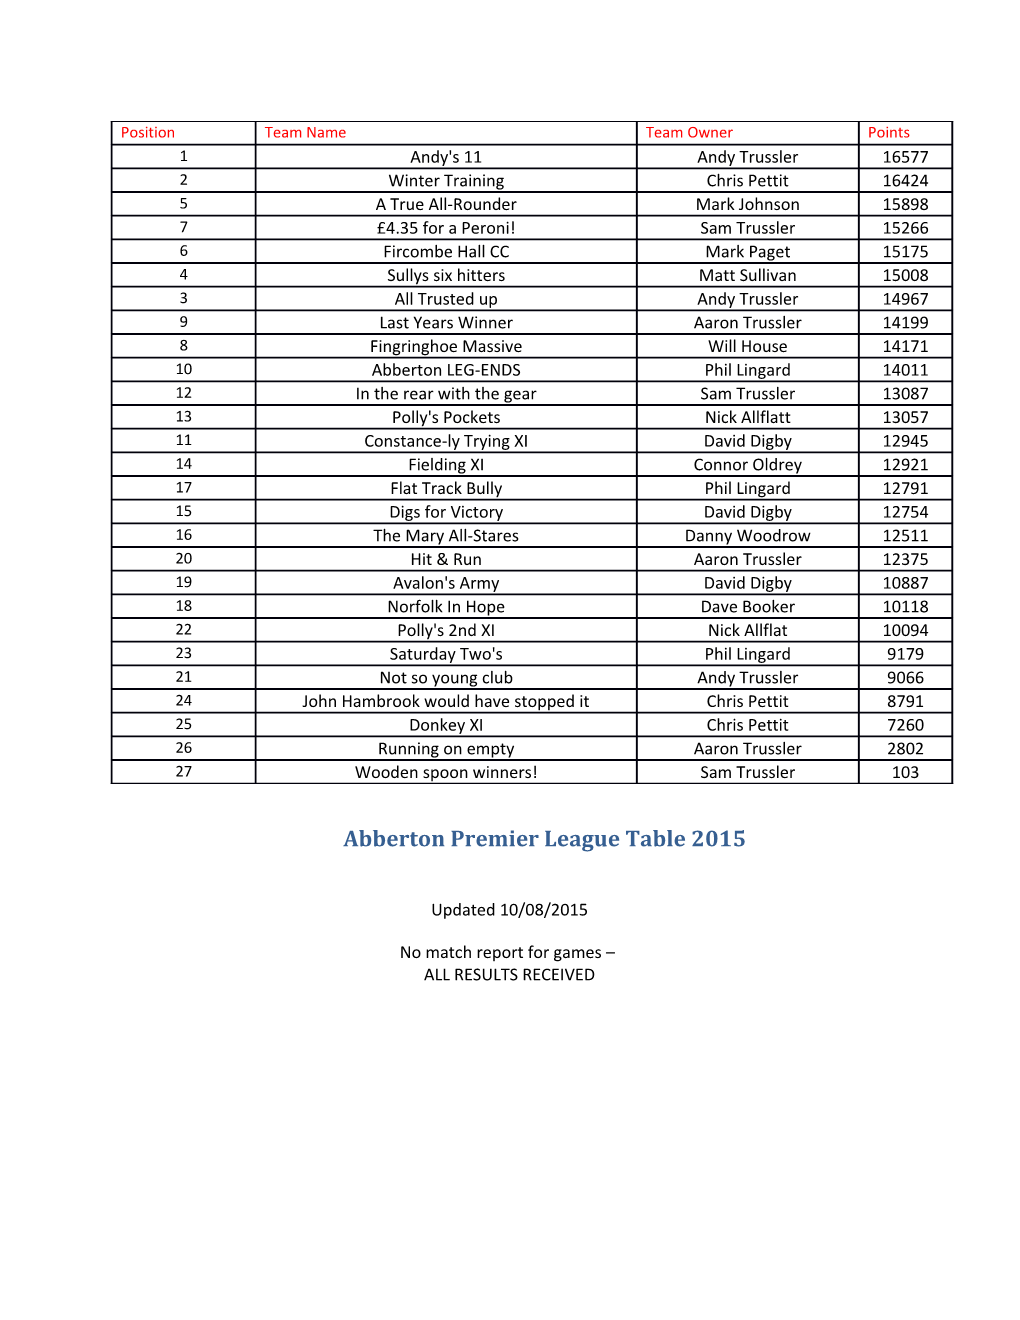 Abberton Premier League Table 2015